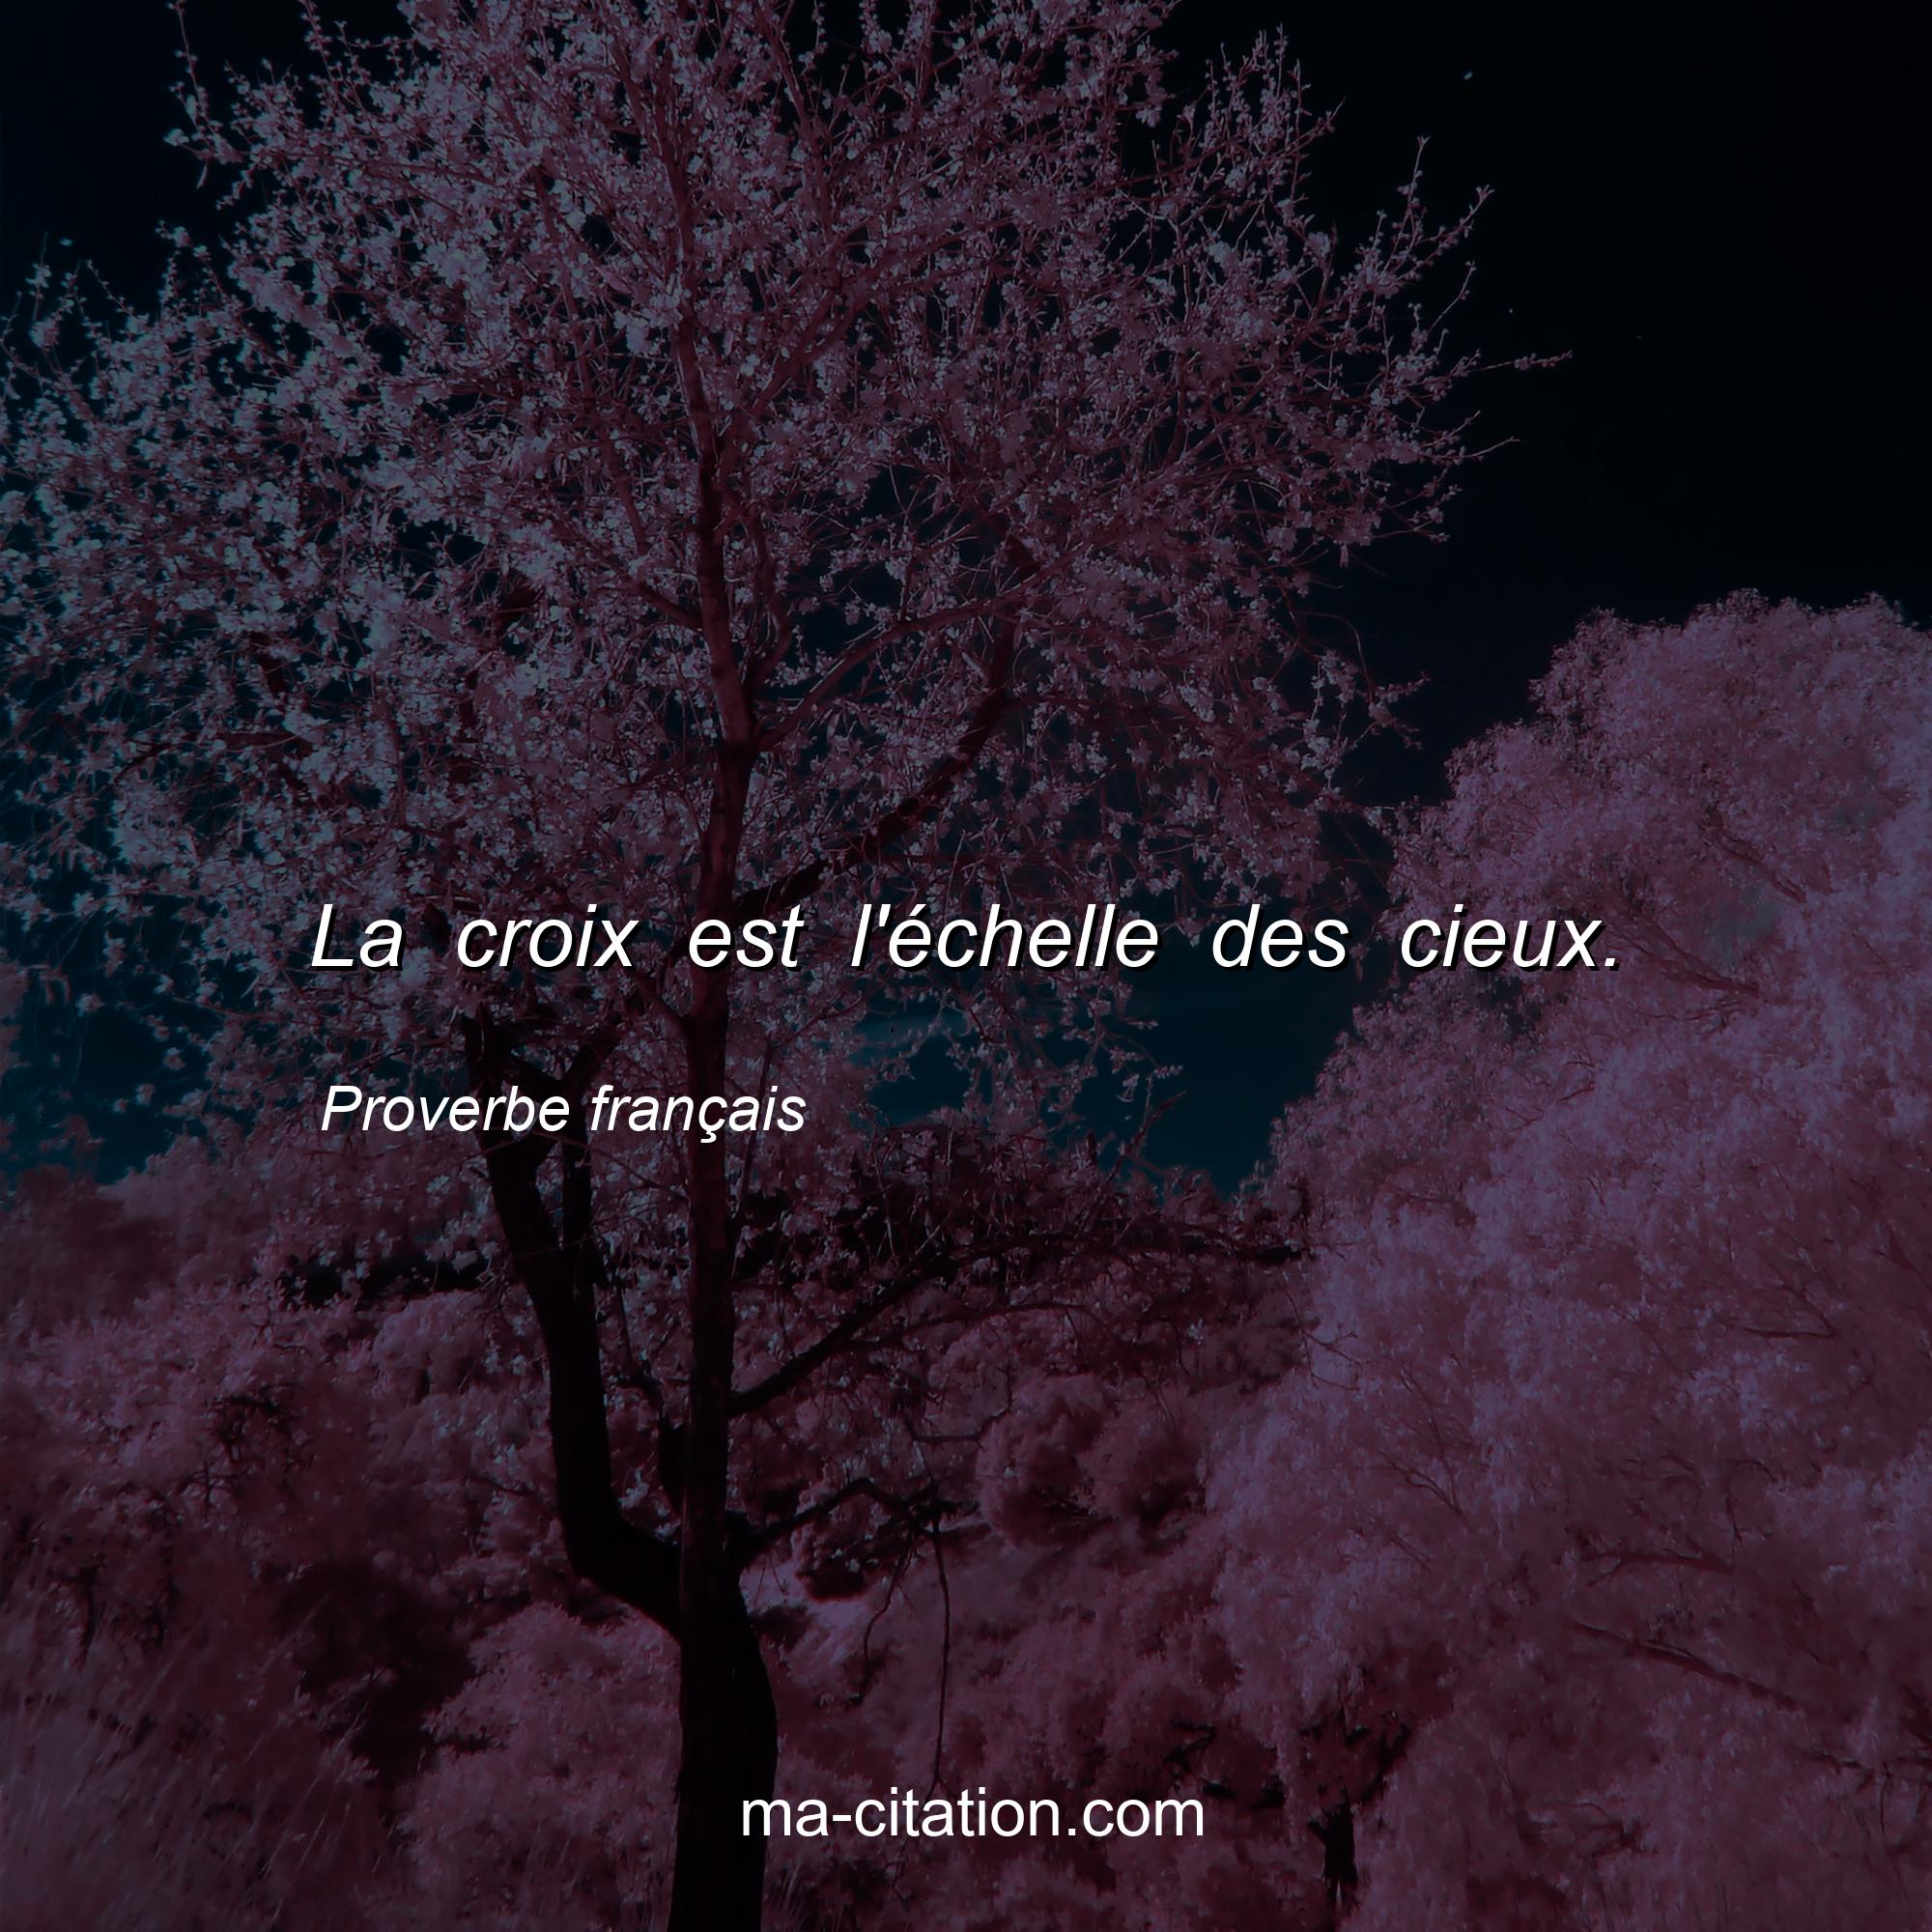 Proverbe français : La croix est l'échelle des cieux.